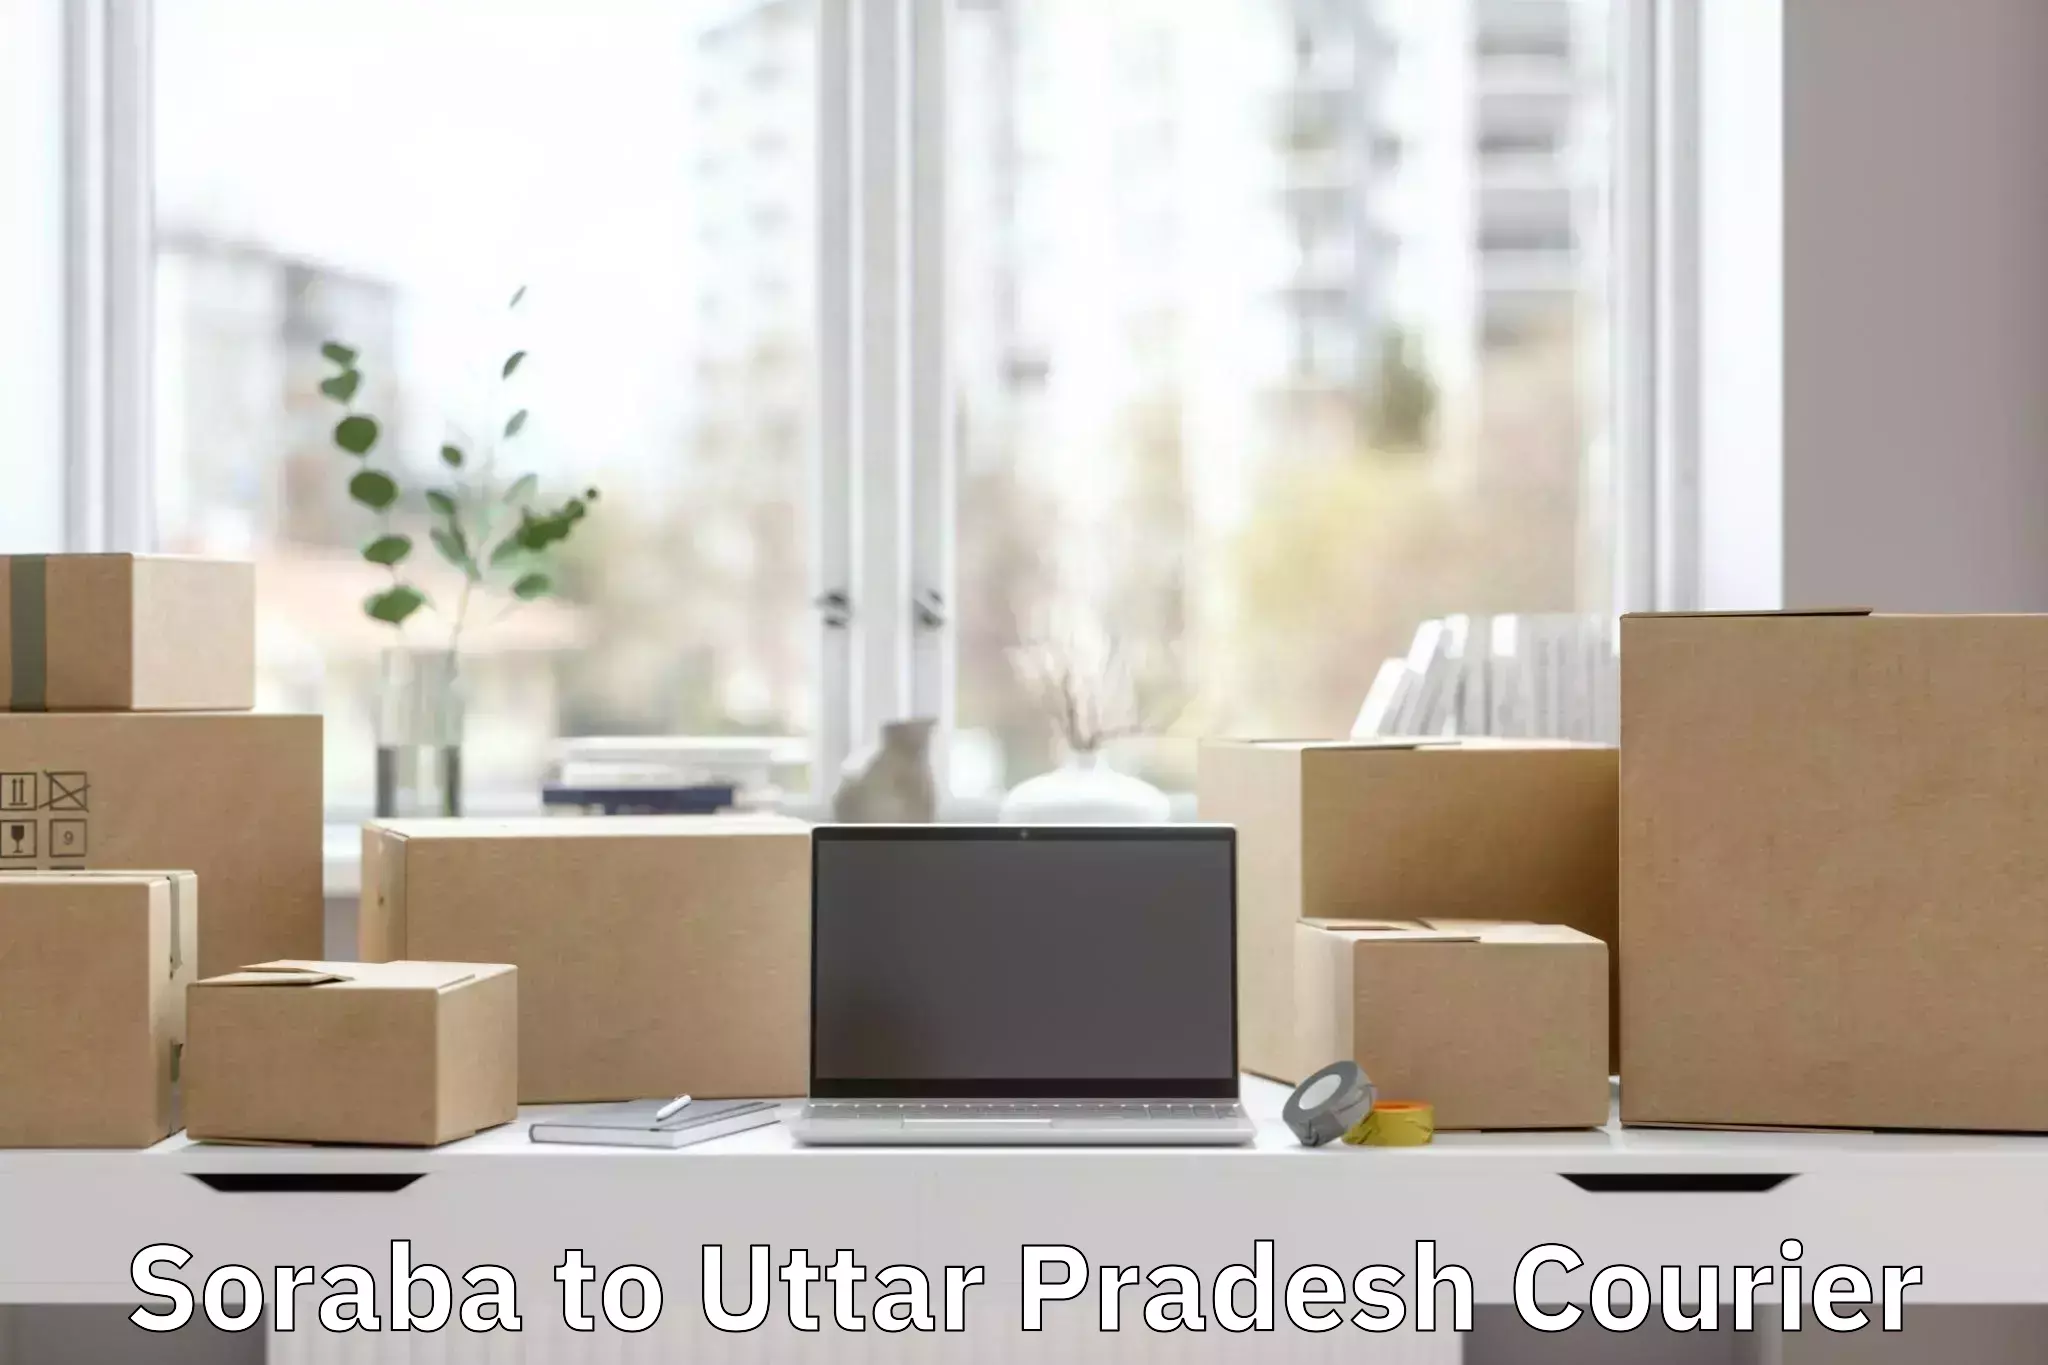 Efficient luggage delivery Soraba to Uttar Pradesh